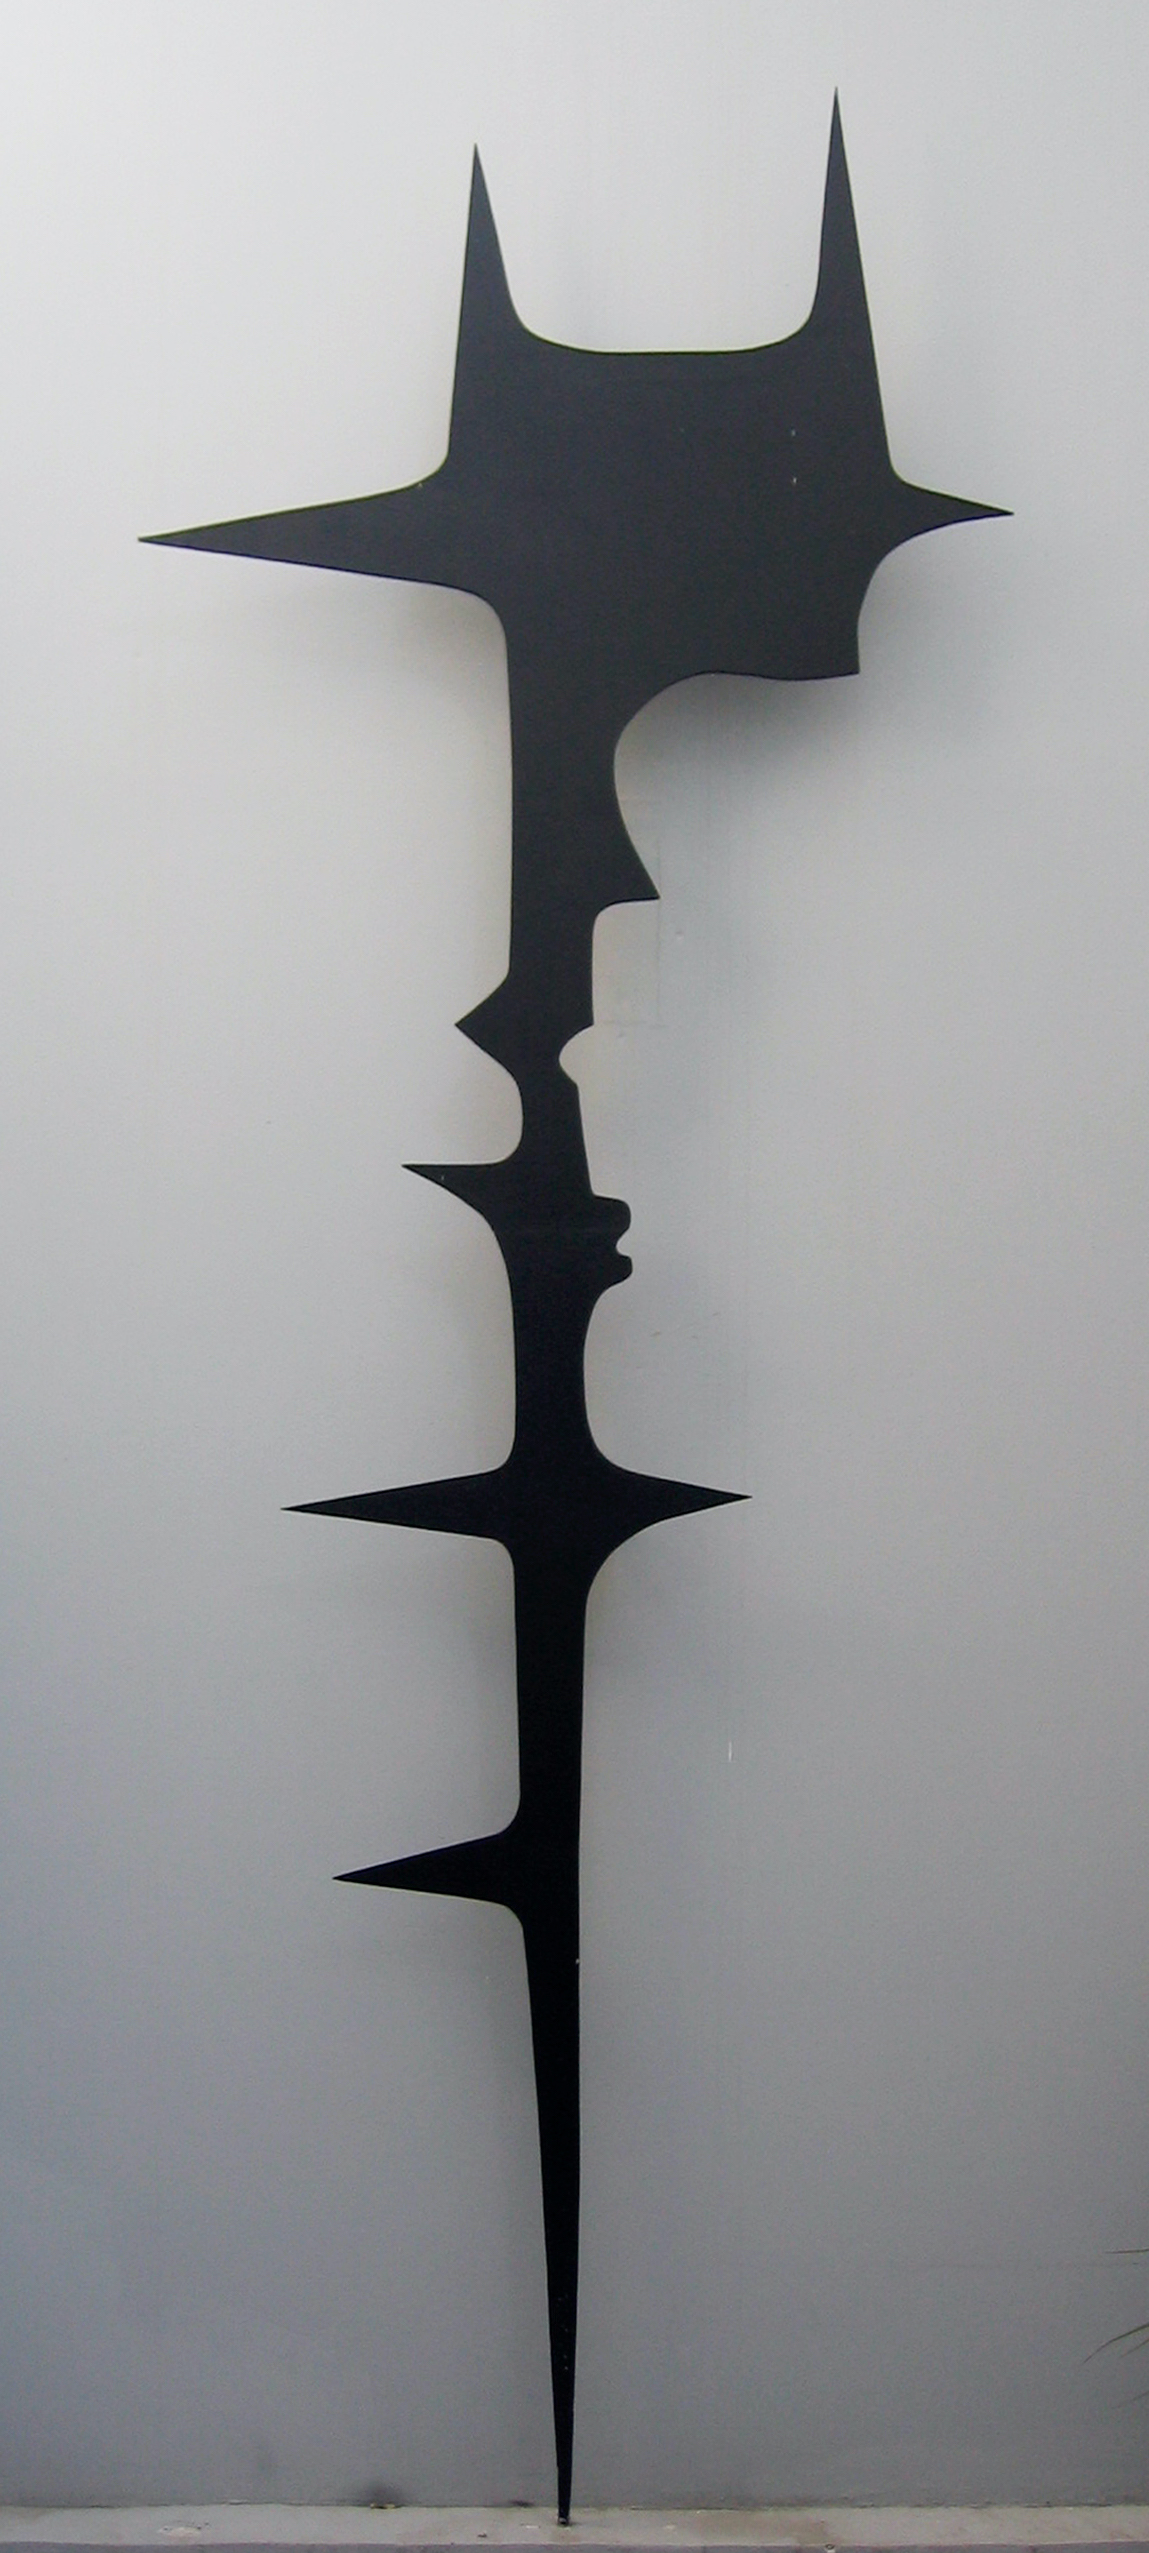 Άλεξ Μυλωνά, Η Γέννηση της Αφροδίτης, 1960, σφυρήλατος σίδηρος βαμμένος με μαύρο χρώμα, 350Χ90Χ15 εκ., MOMus-Μουσείο Άλεξ Μυλωνά